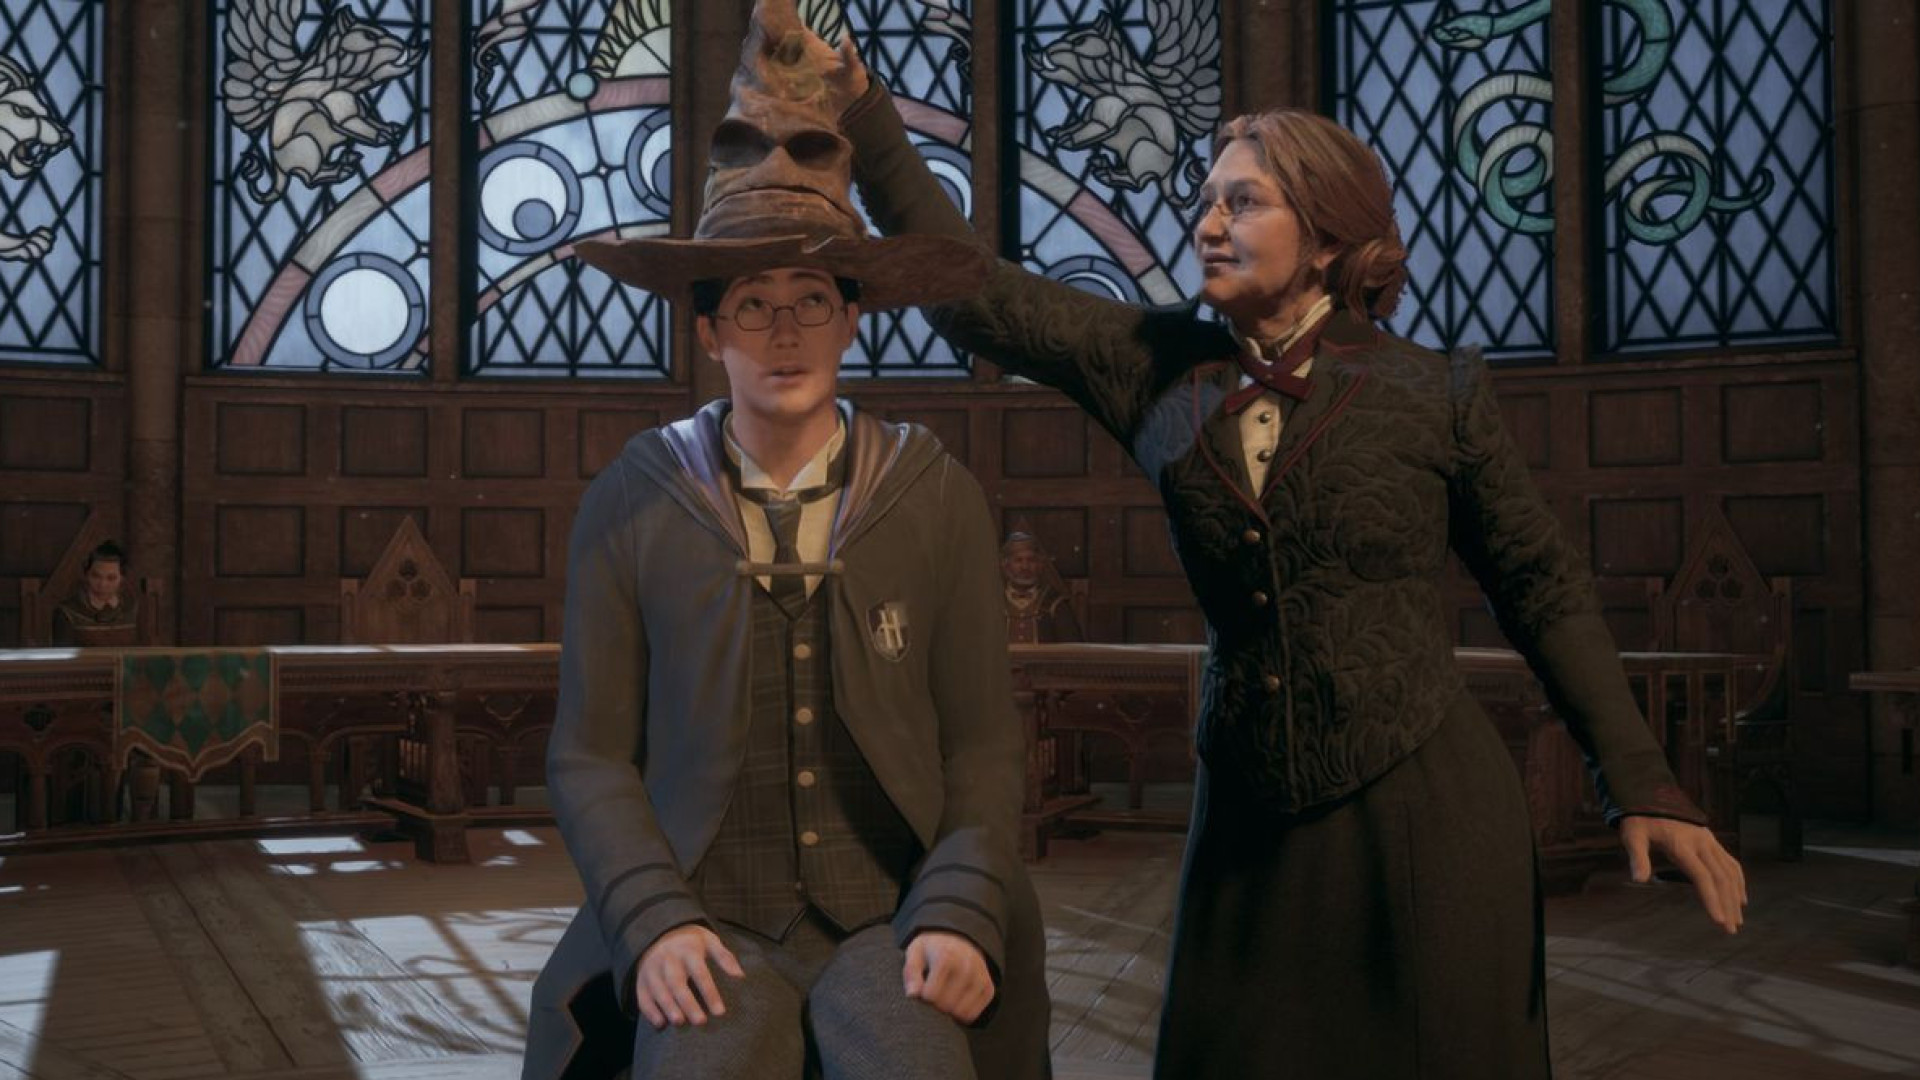 Novo jogo de Harry Potter quebra recorde antes de ser lançado